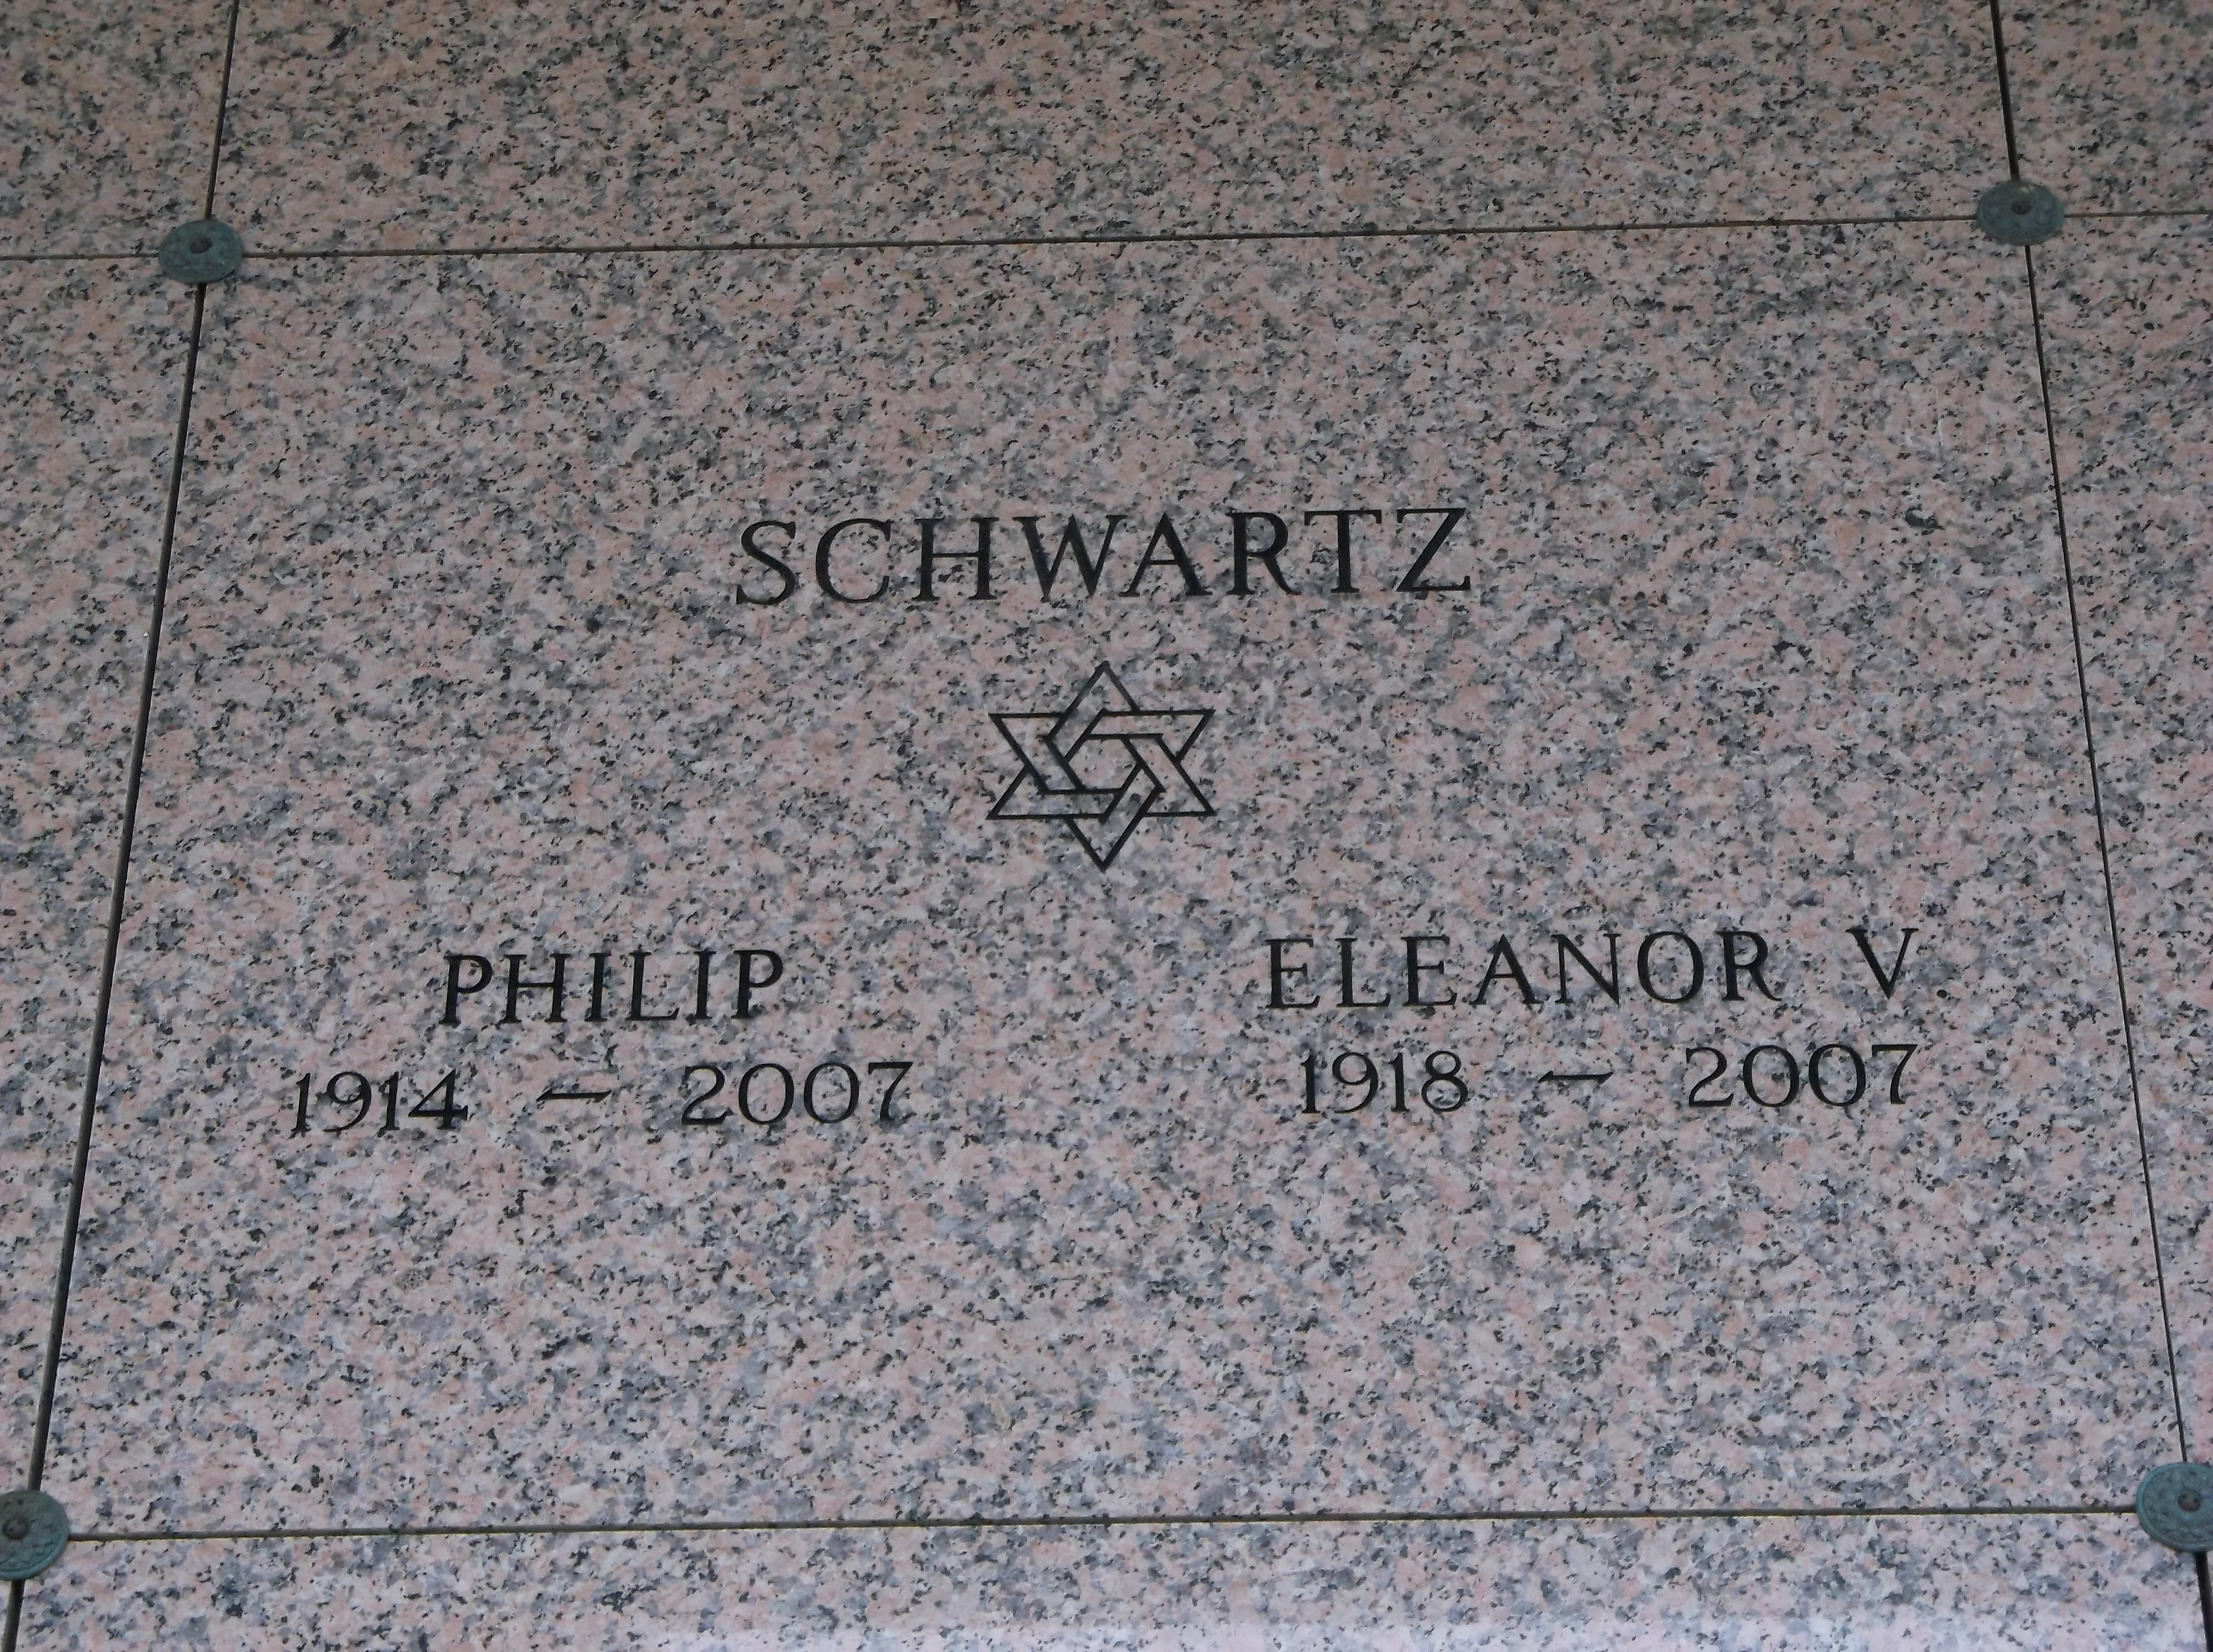 Philip Schwartz